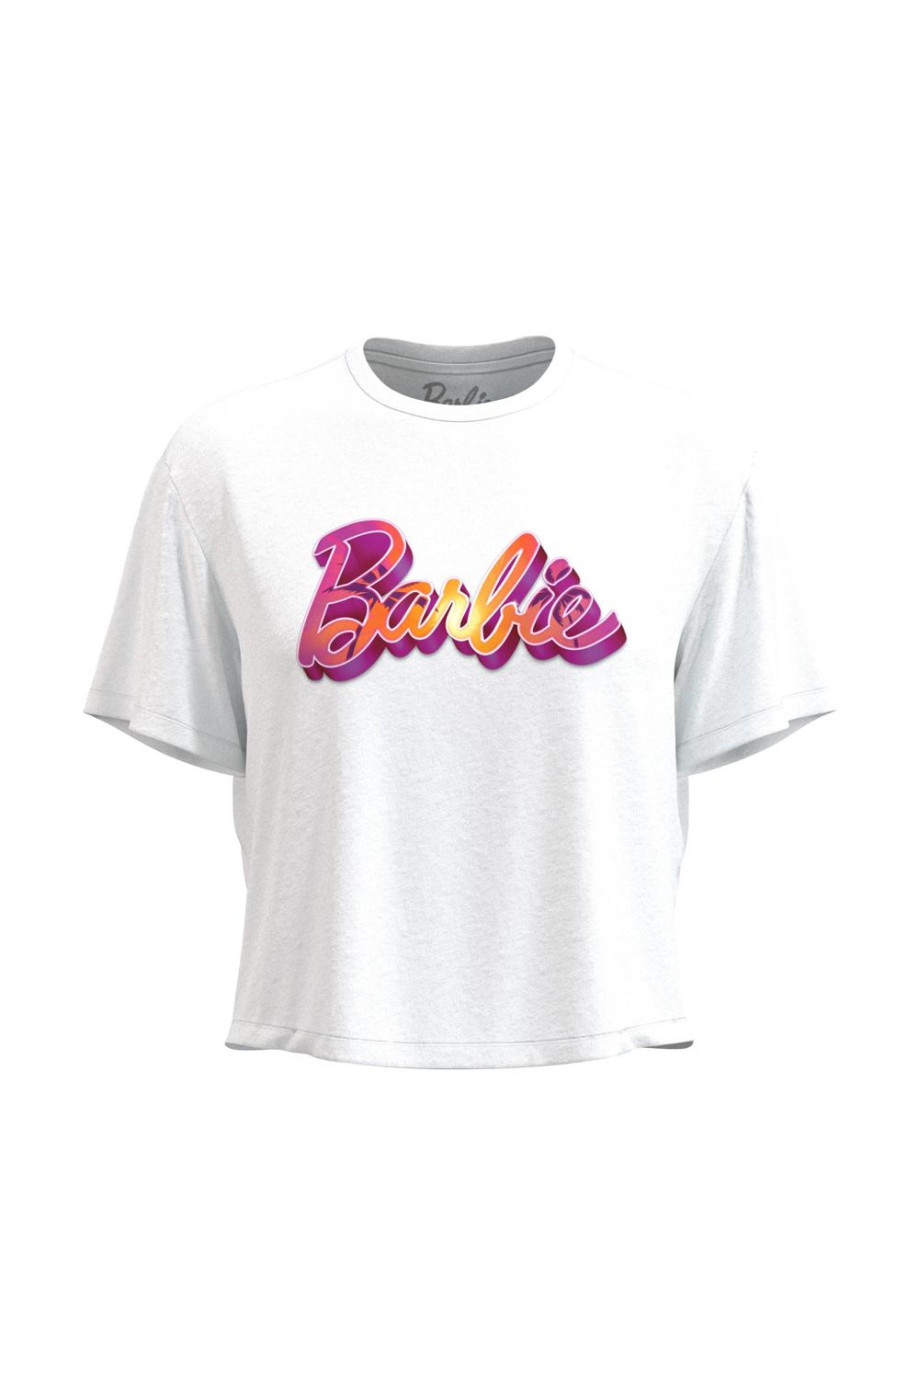 Camiseta unicolor crop top con estampado de Barbie